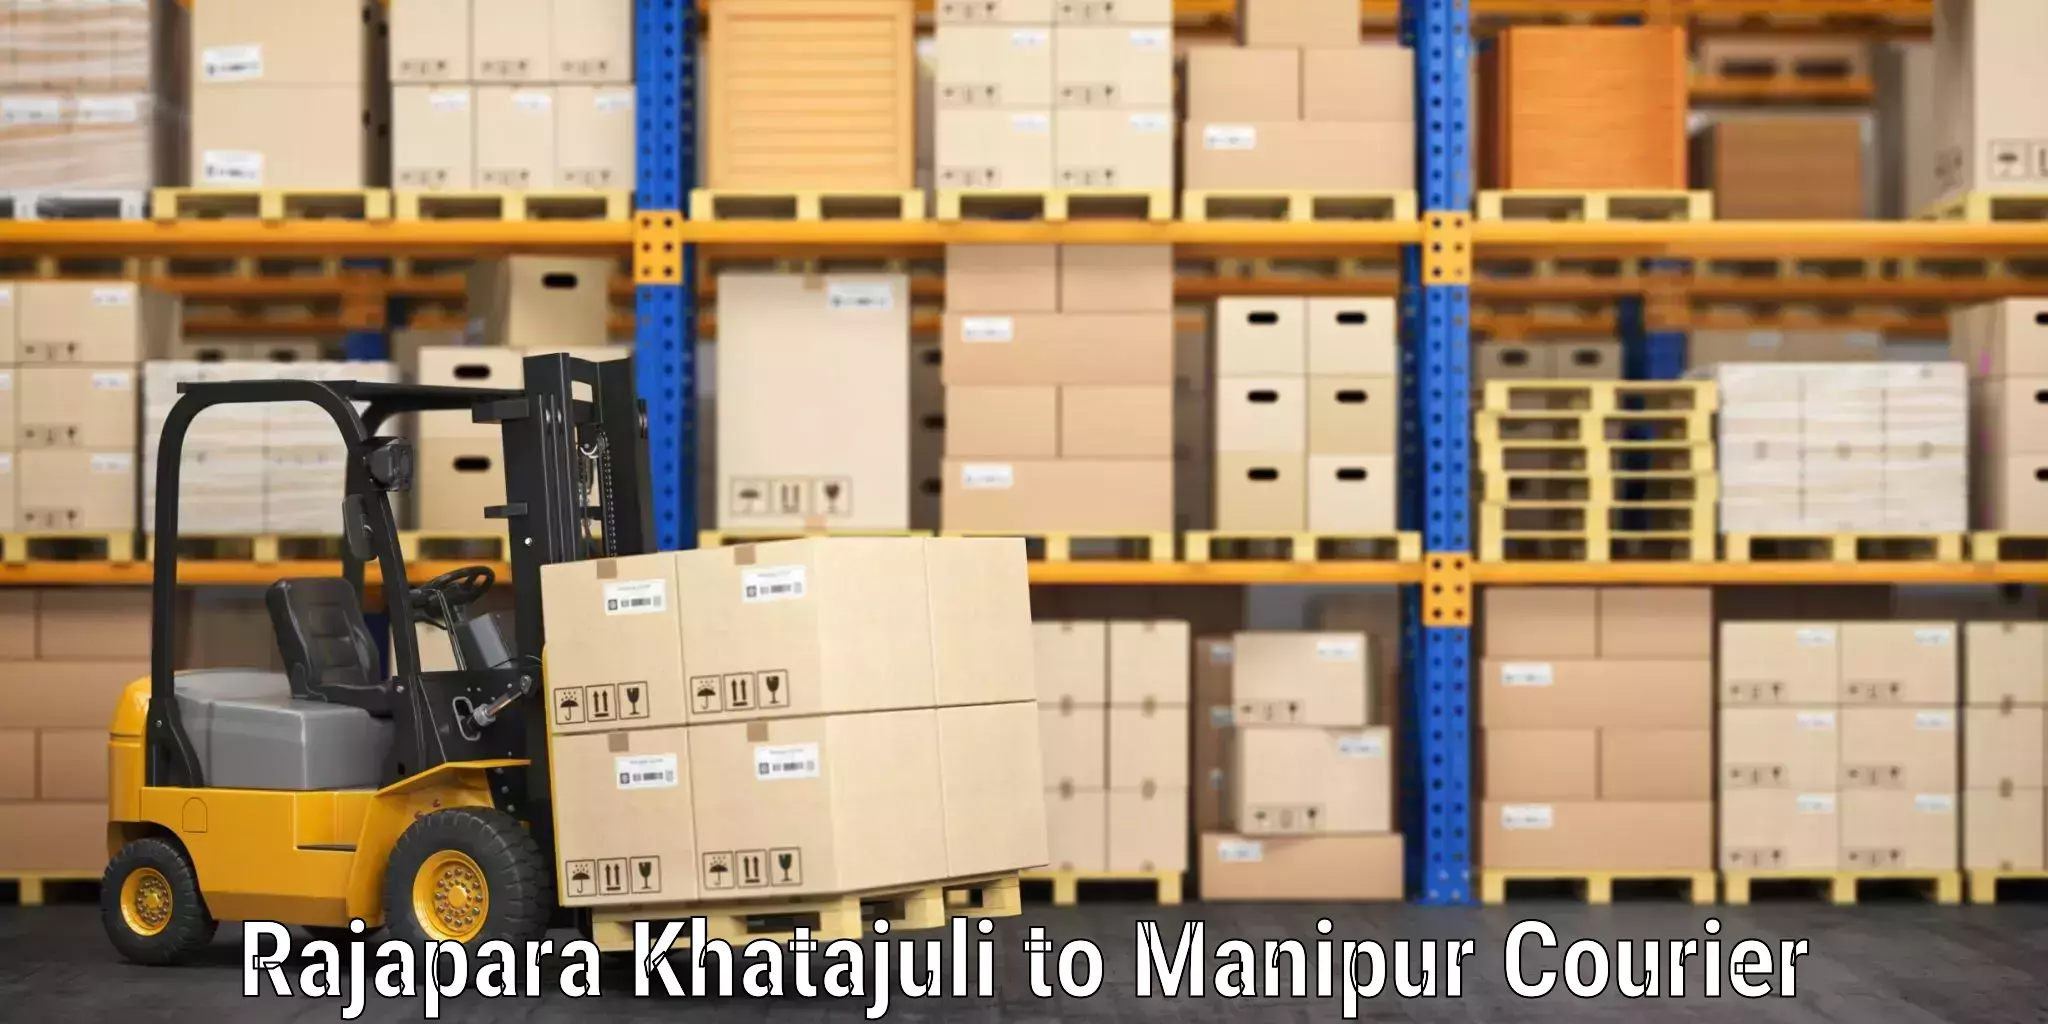 Baggage shipping quotes Rajapara Khatajuli to Moirang